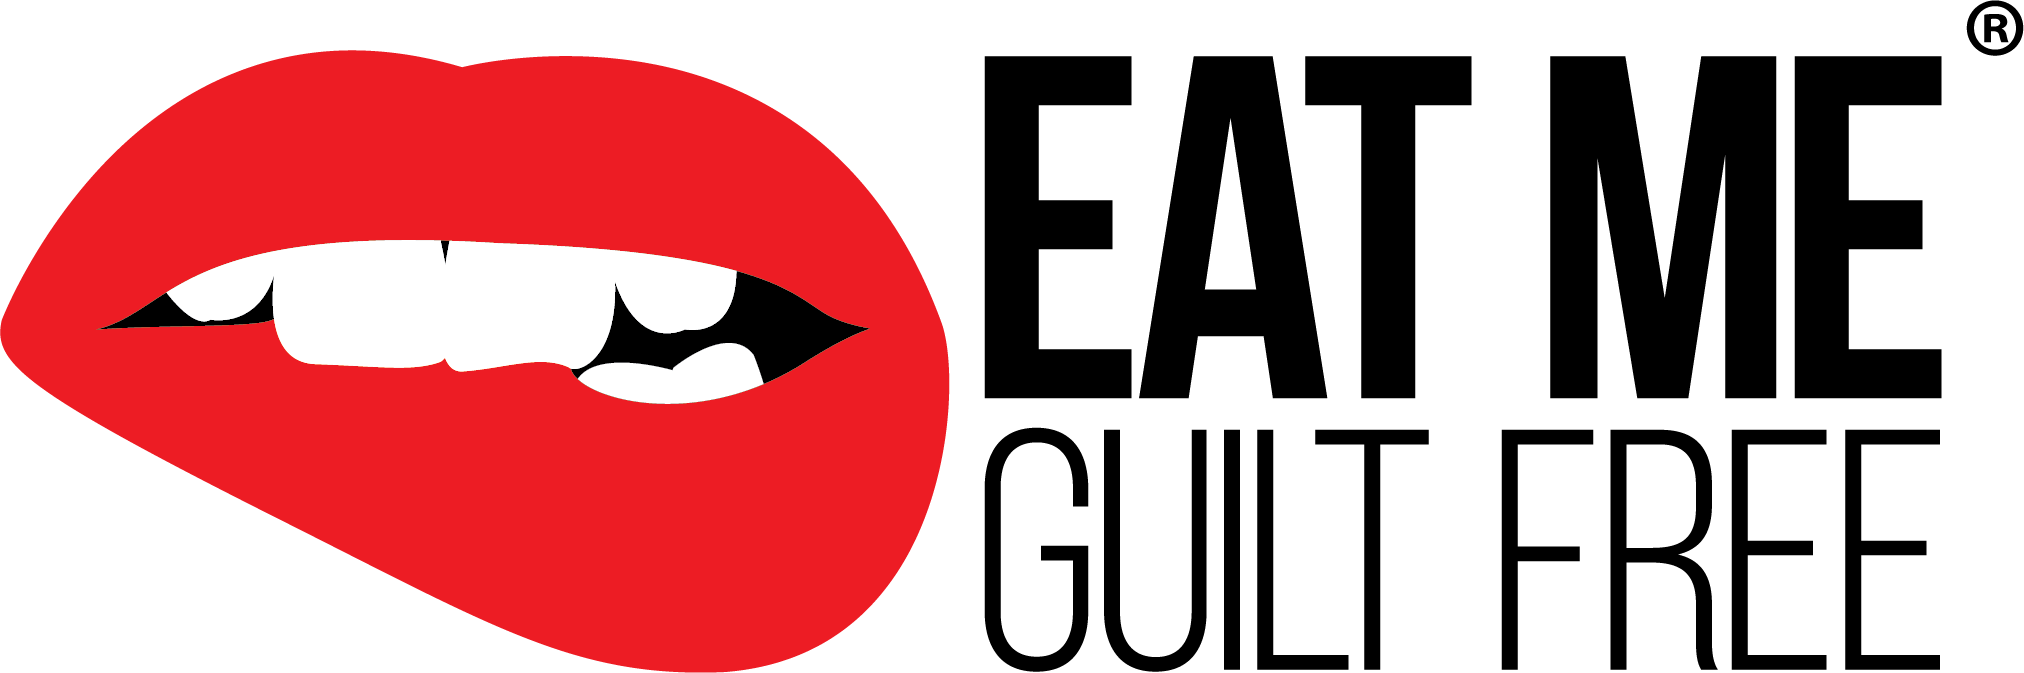 Nativ Basics logo